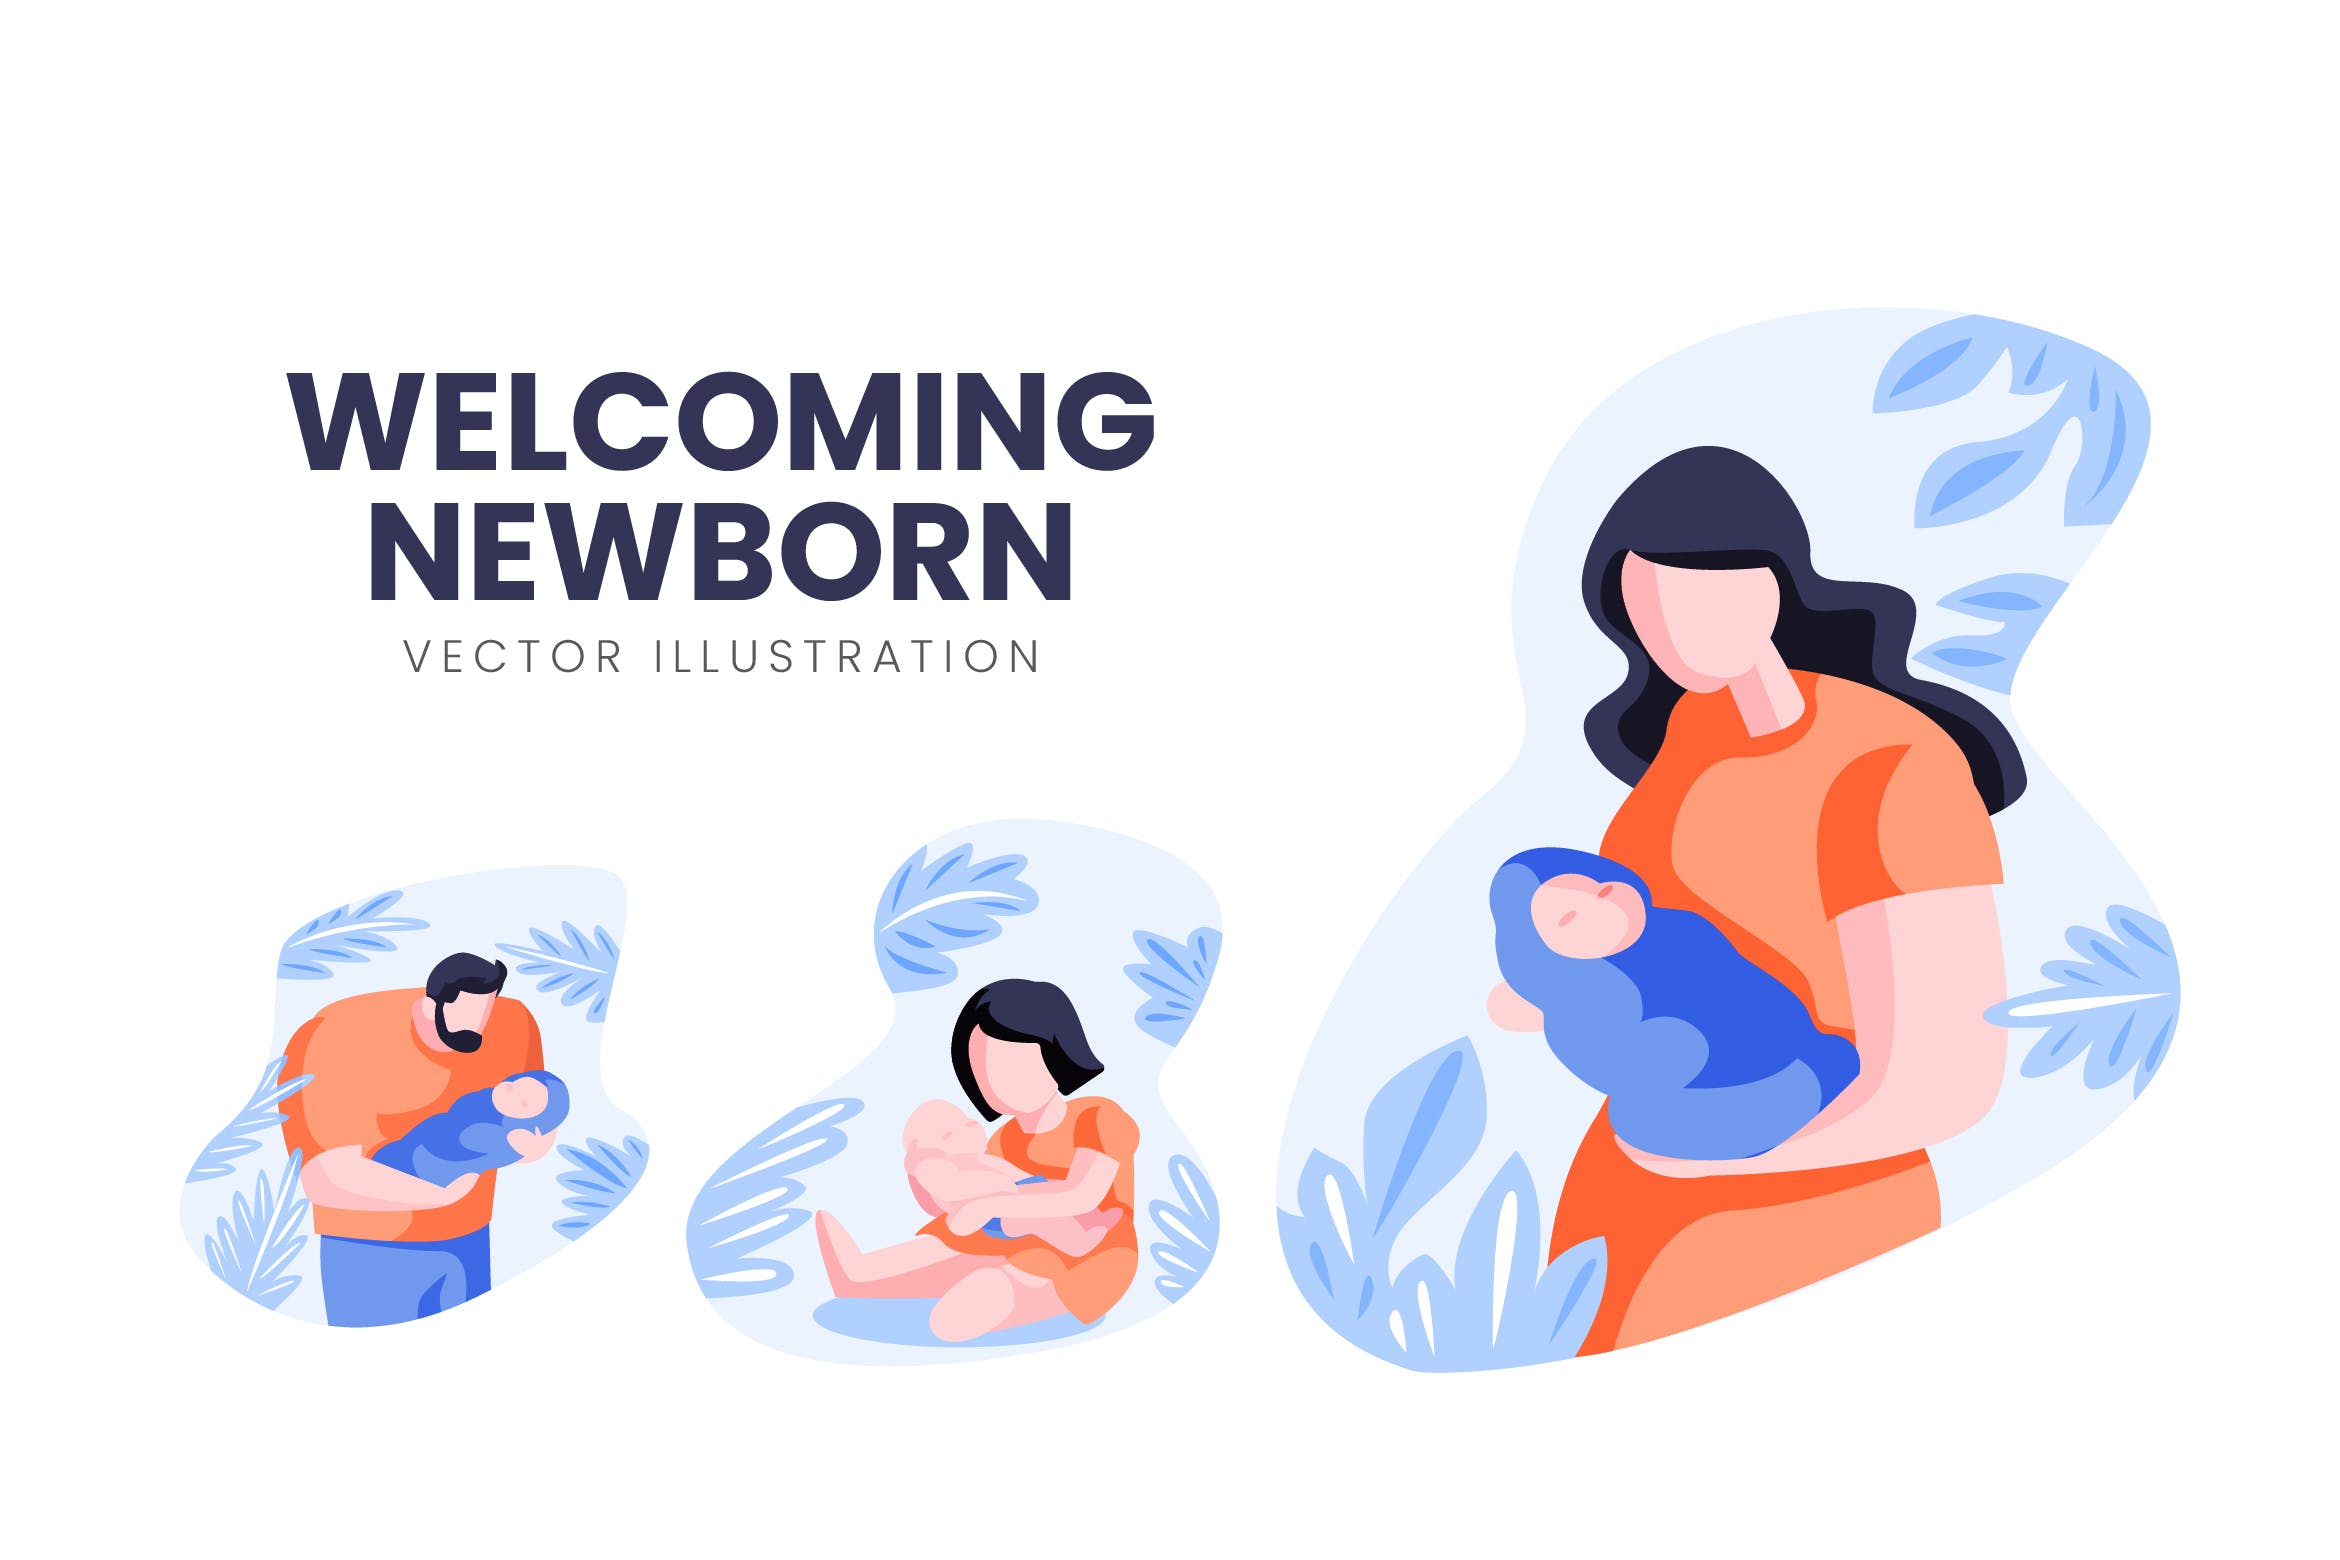 迎接降生新生儿人物形象大洋岛精选手绘插画矢量素材 Welcoming Newborn Vector Character Set插图